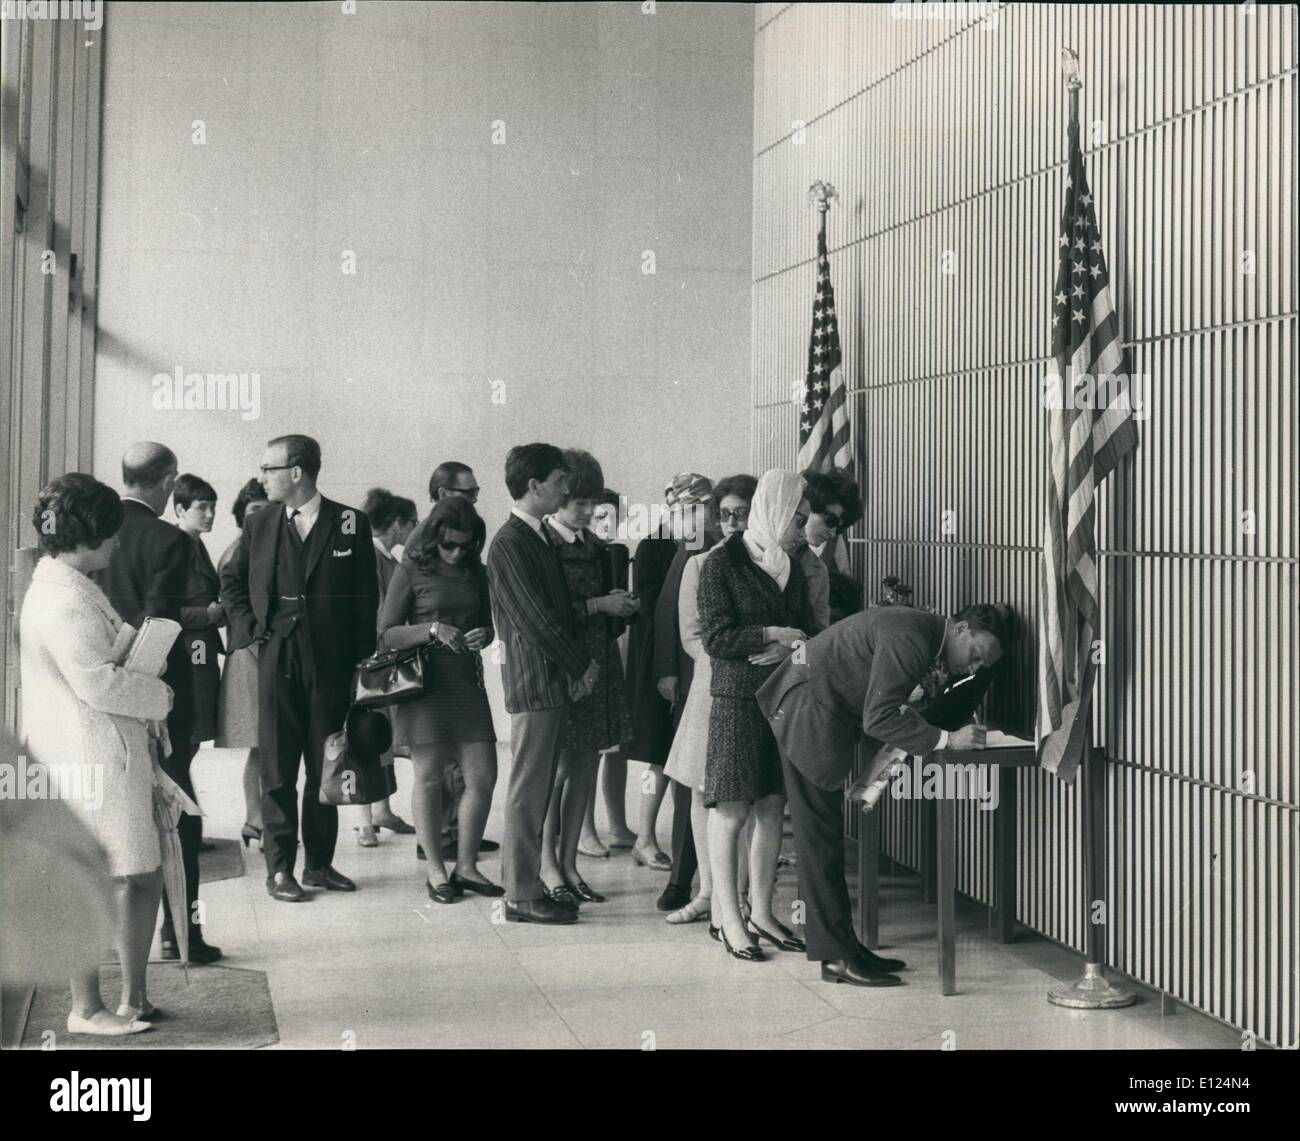 Giugno 06, 1986 - Il Senatore Robert Kennedy scene muore a Londra: Foto mostra una coda di lutto dell'Ambasciata americana a Londra Foto Stock